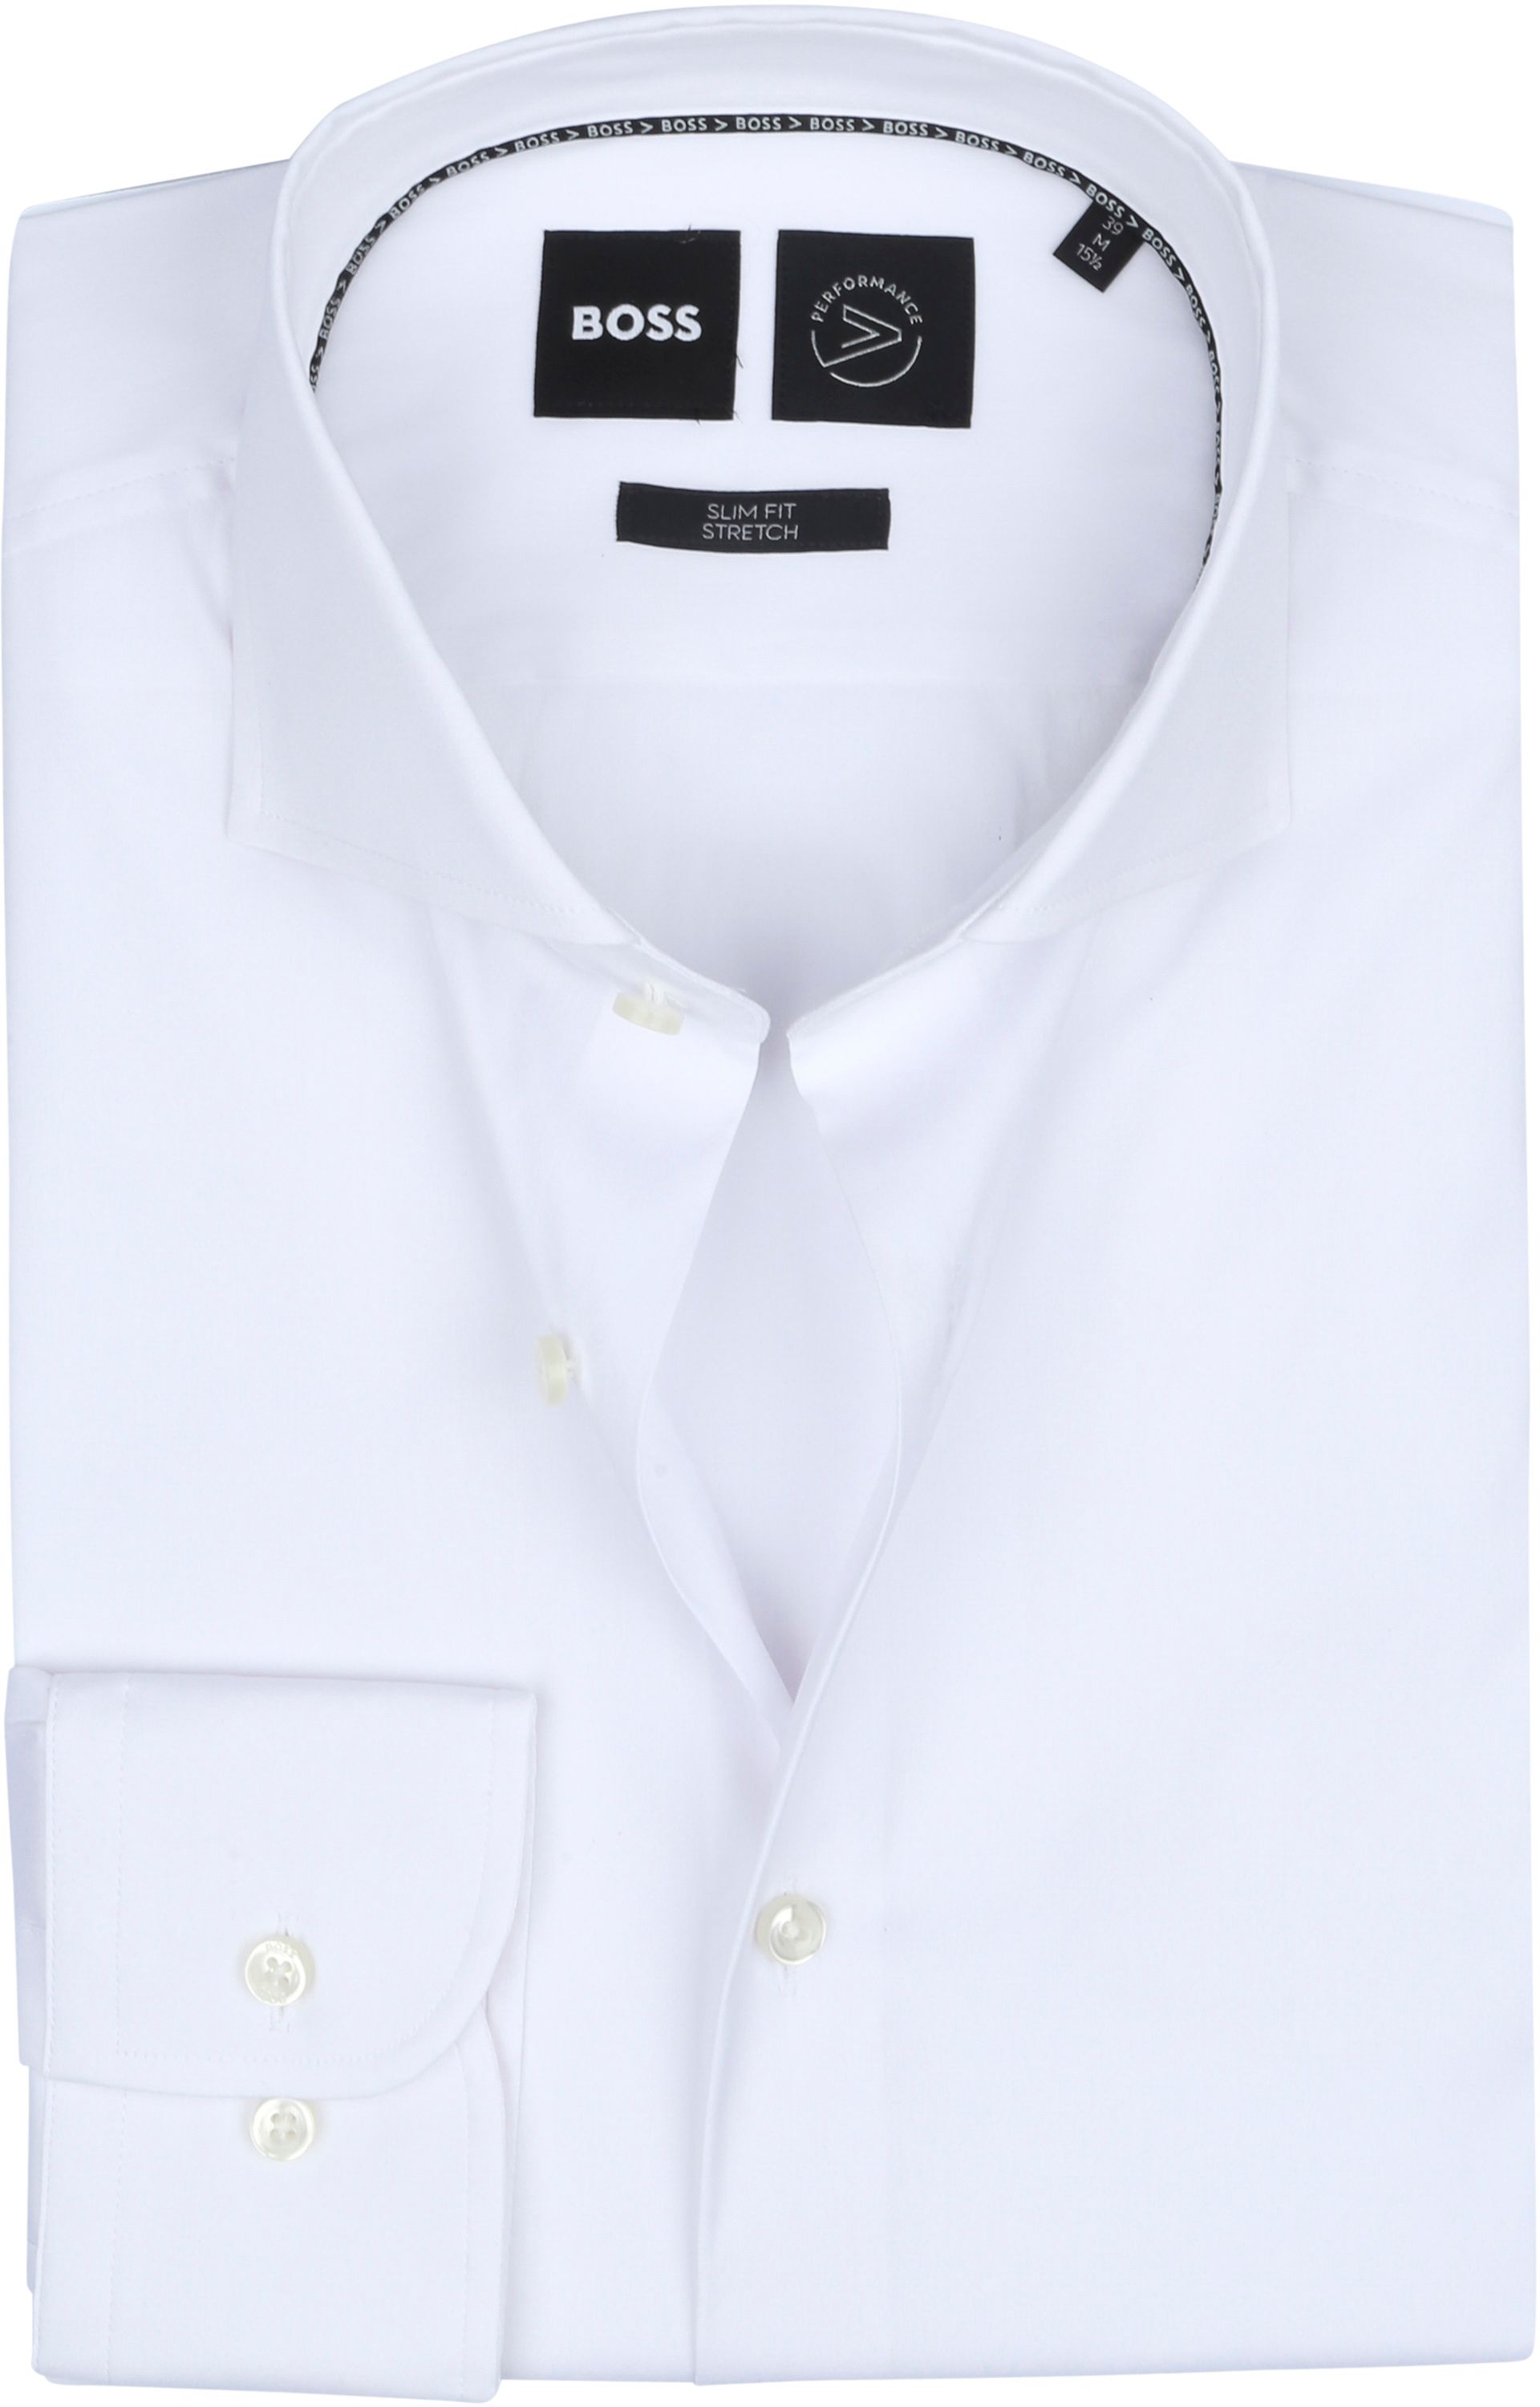 Hugo Boss Hank Shirt White size 15